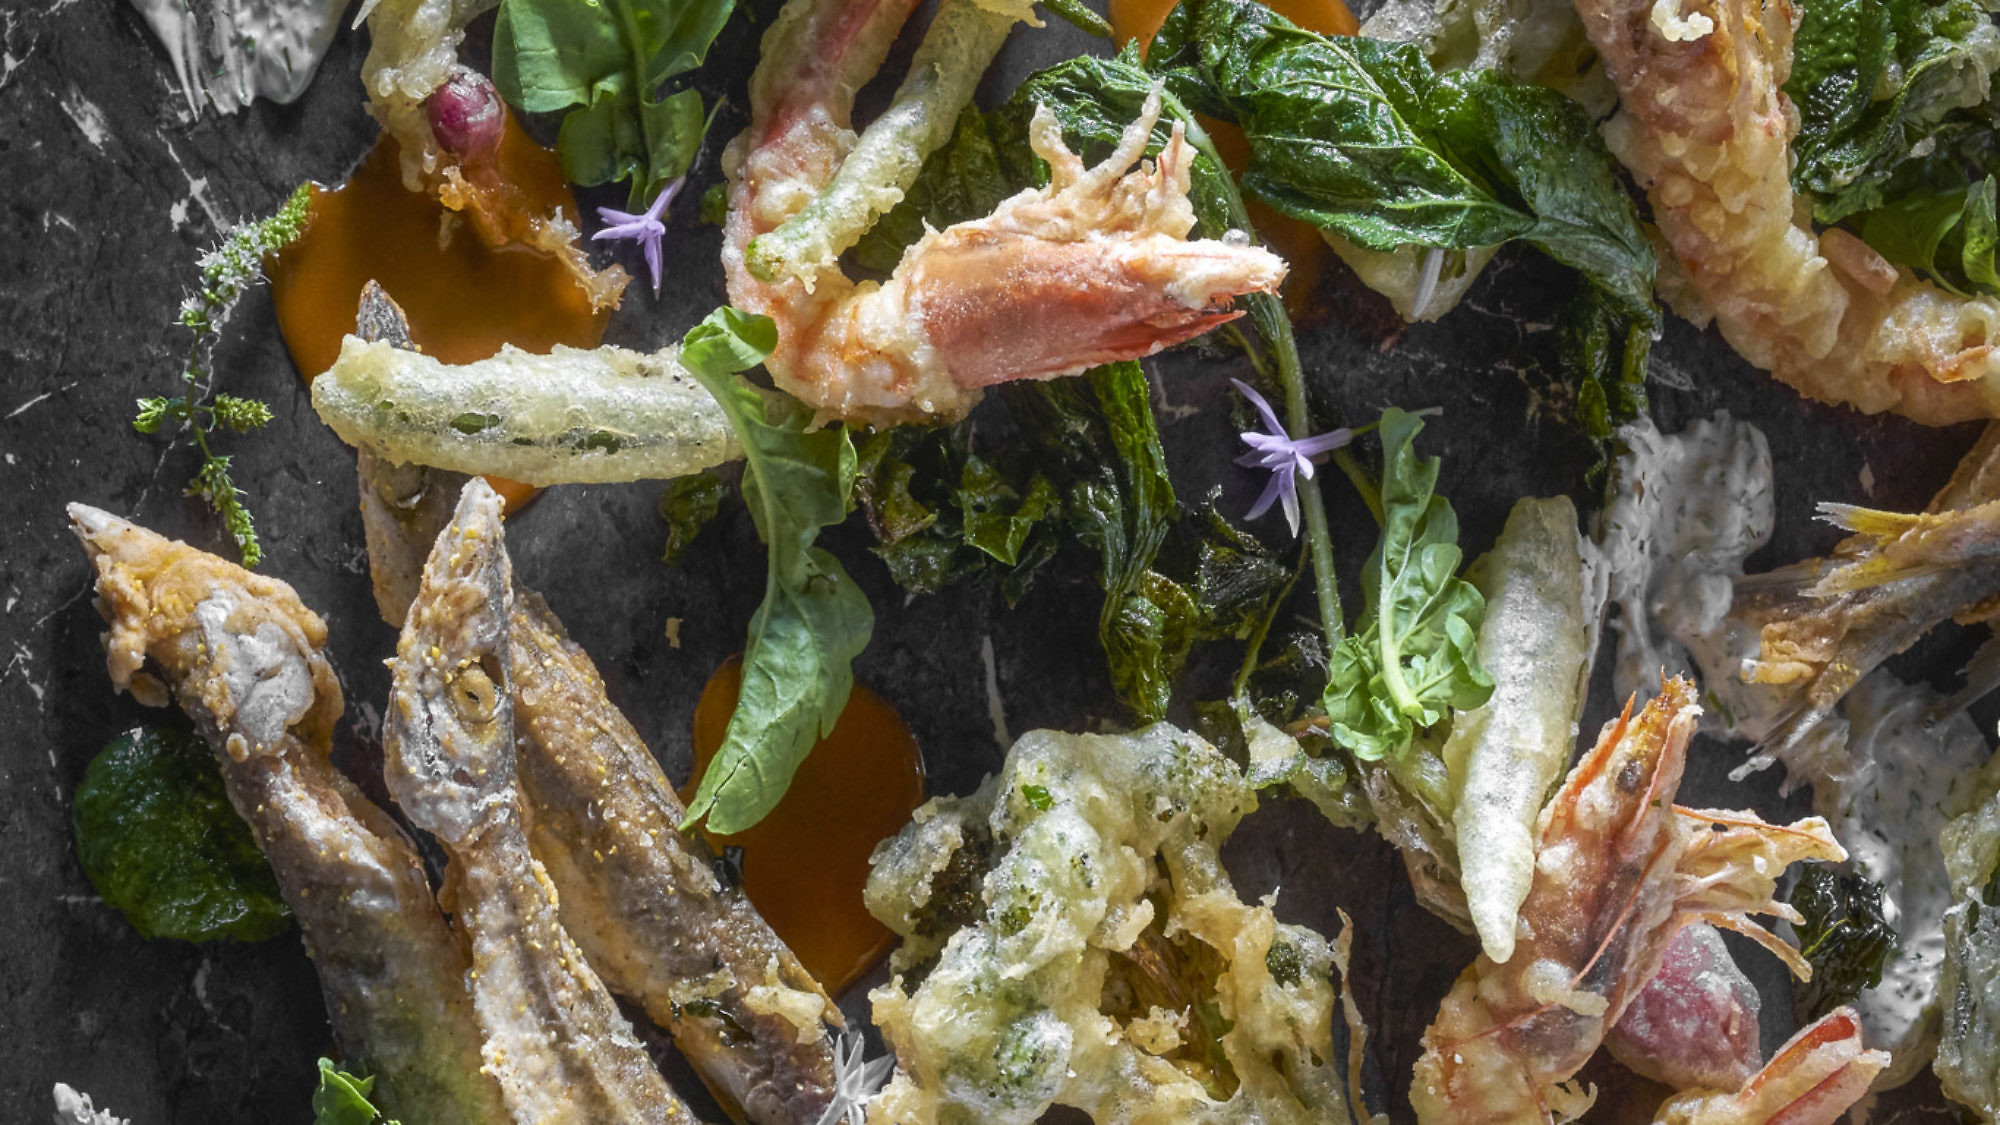 ירקות ודגים עונתיים בסגנון פריטו מיסטו של שף עומר אבישר. צילום: אנטולי מיכאלו. סטיילינג: ענת לבל